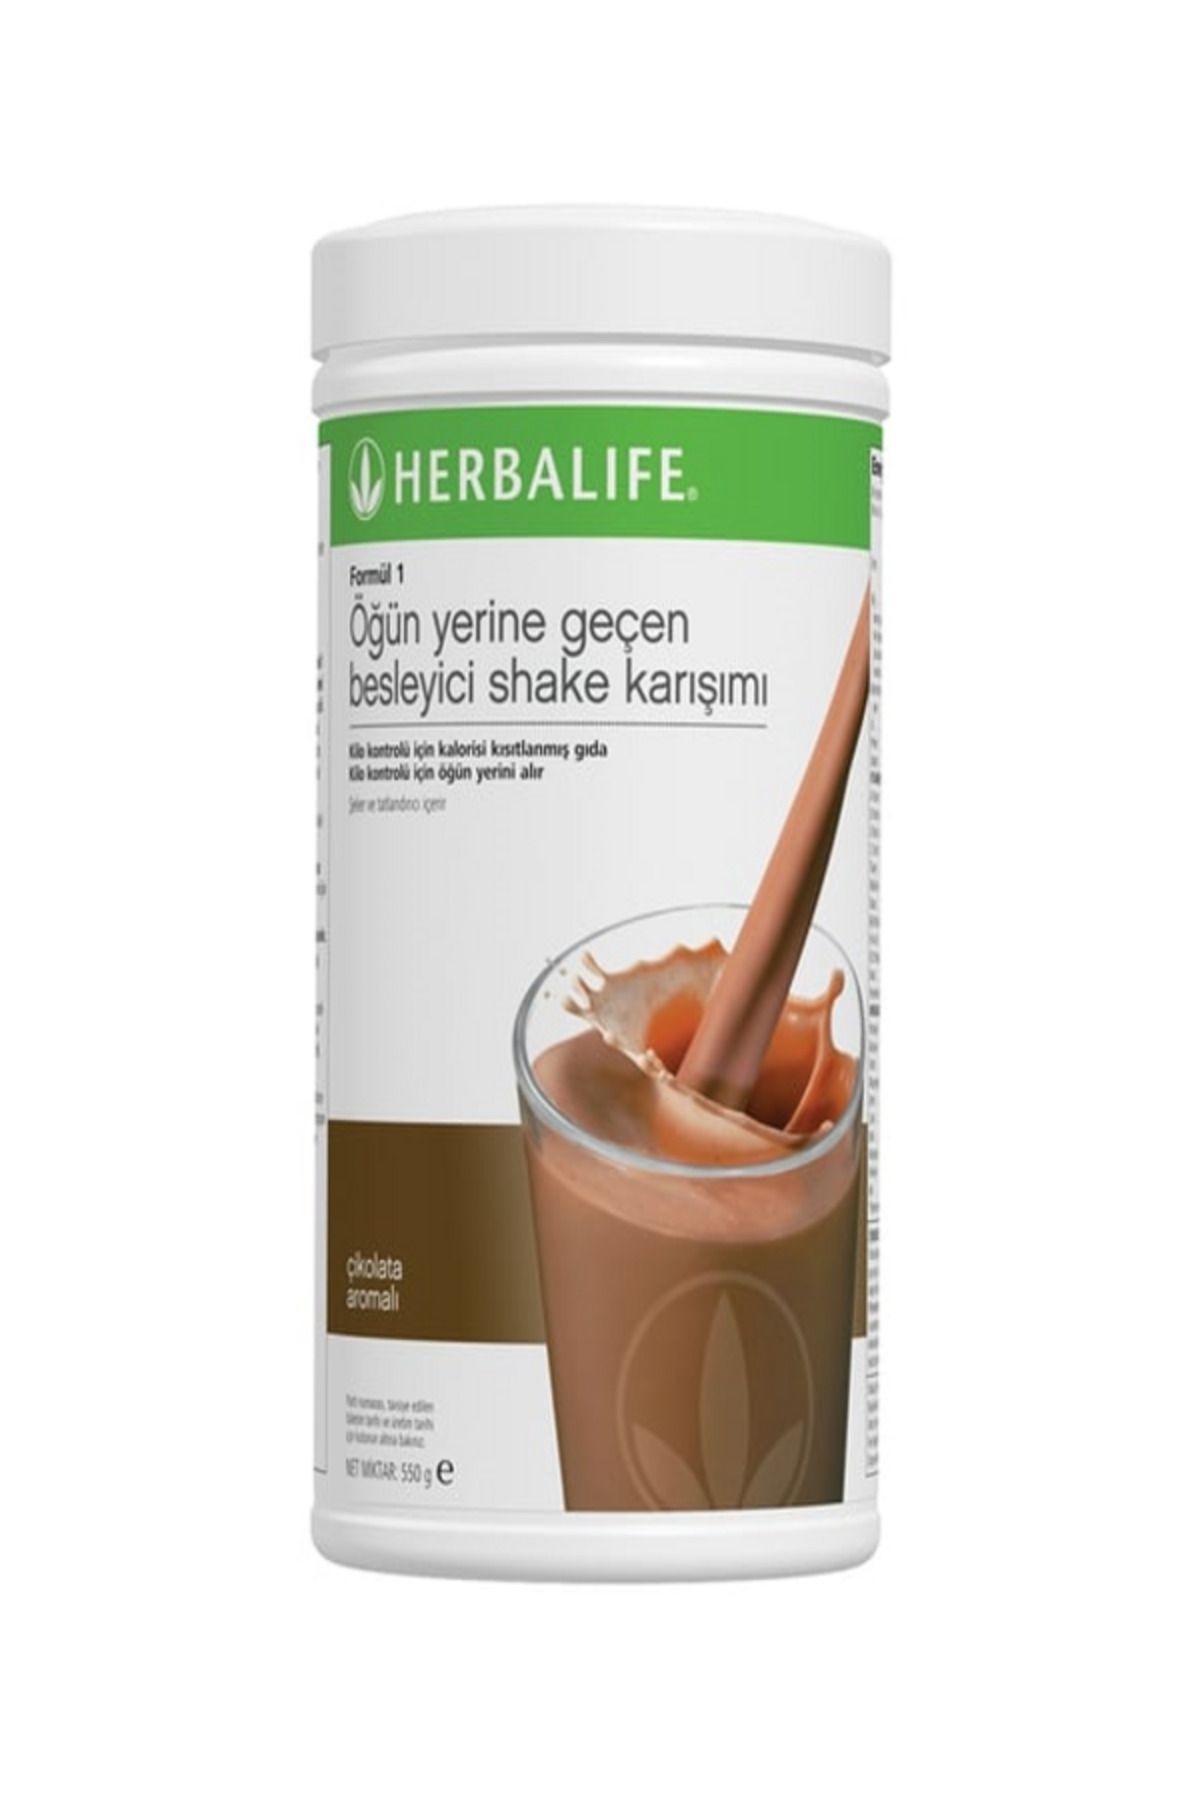 Herbalife Formül 1 Öğün Yerine Geçen Besleyici Shake Karışımı 550g- Çikolata Aromalı